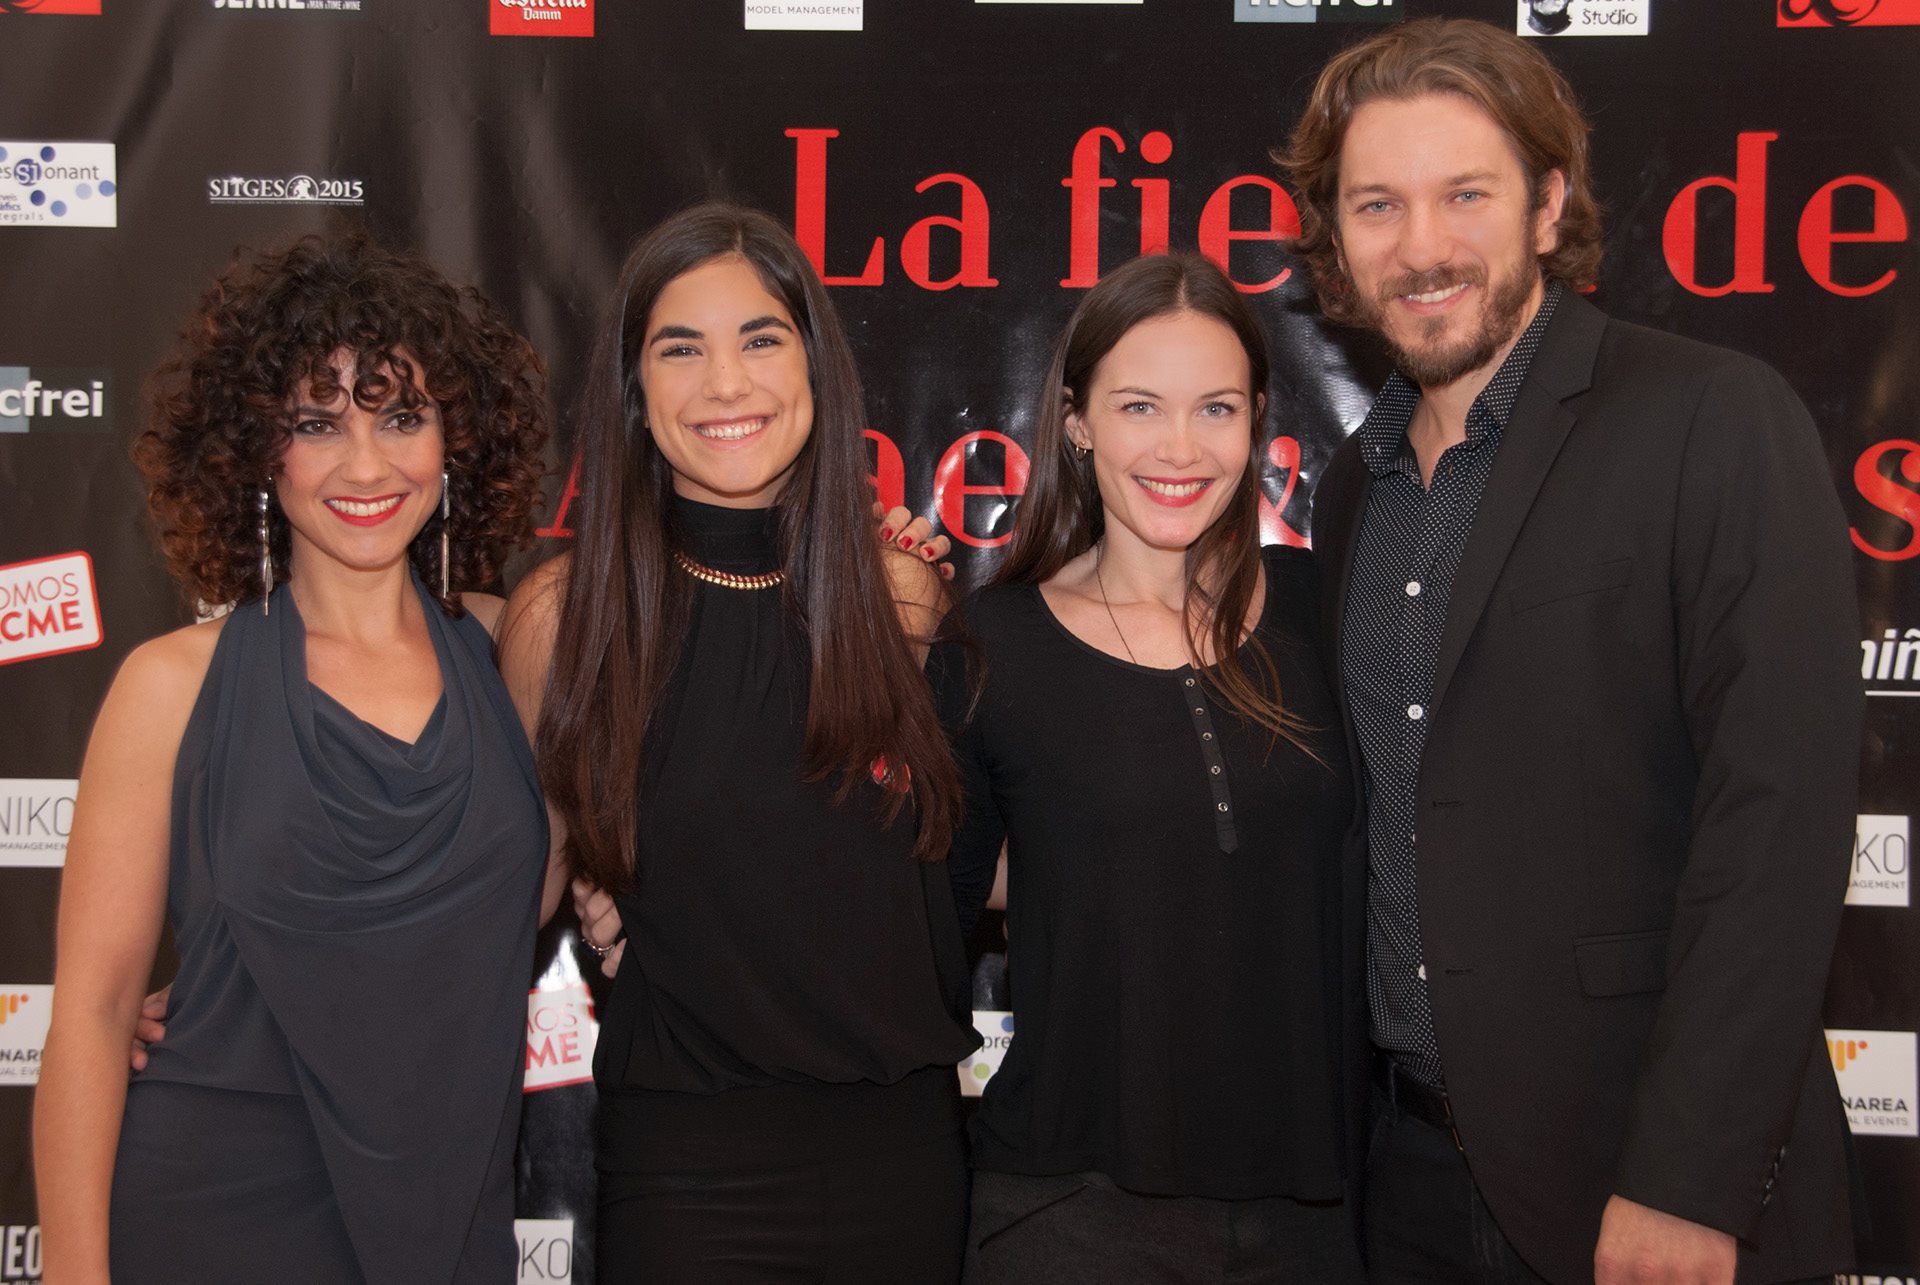 Sitges Film Festival 2015, la fiesta benéfica de Anael y Celeste